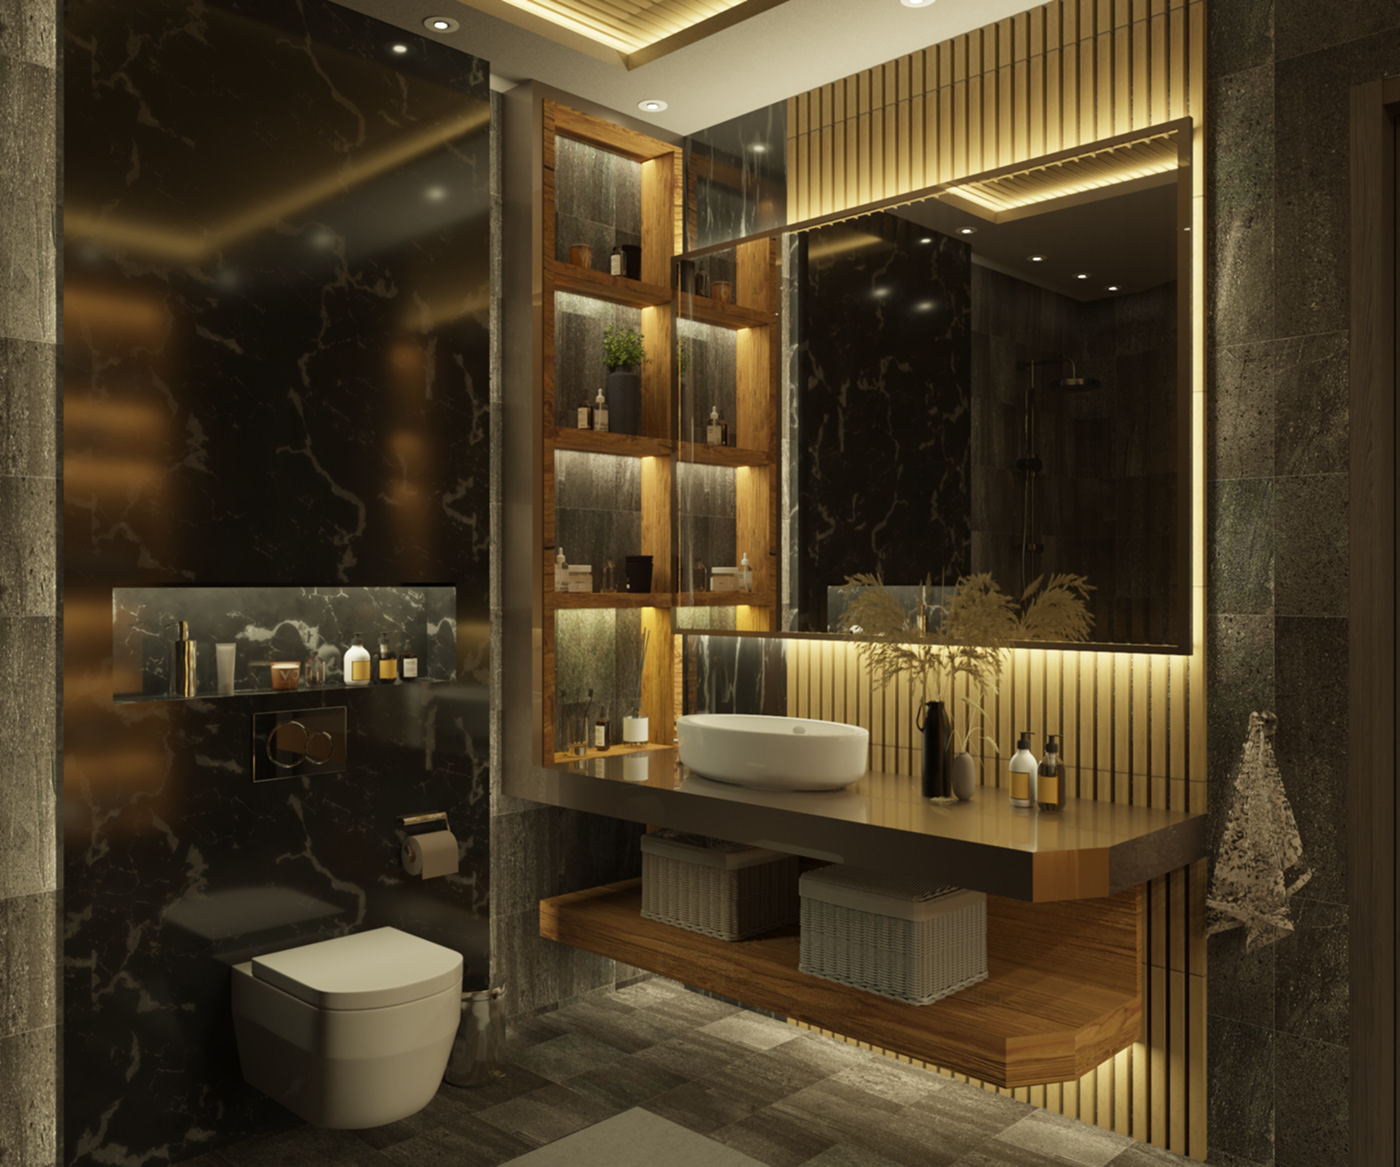 design bathroom Interior visualization 3ds max corona architecture AutoCAD Render